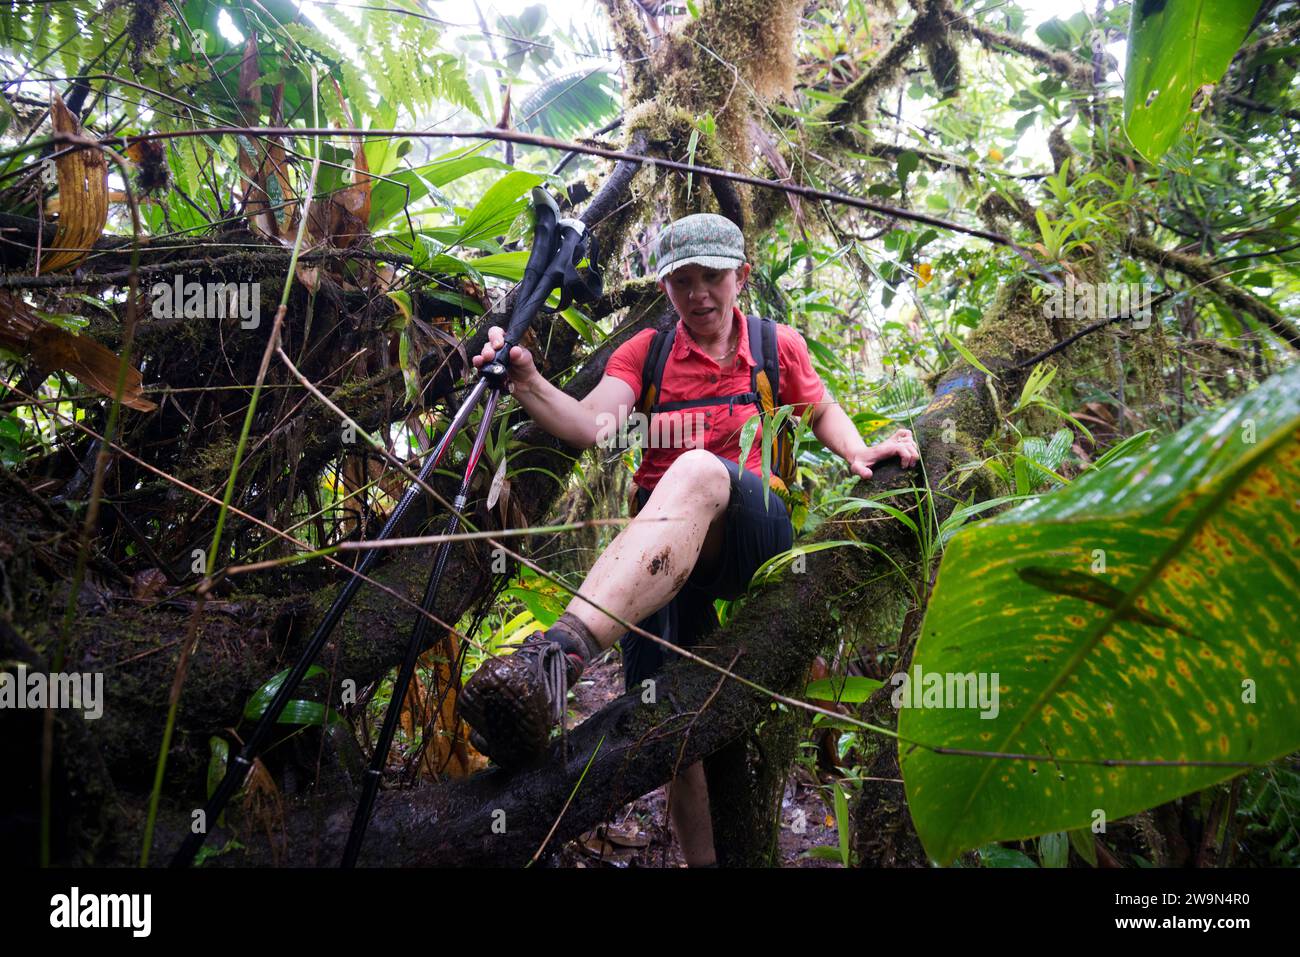 Un escursionista con zaino in spalla attraversa una sezione di foresta pluviale molto boscosa e umida sul segmento 8 del Waitukubuli National Trail sull'isola caraibica di Dominica. Foto Stock